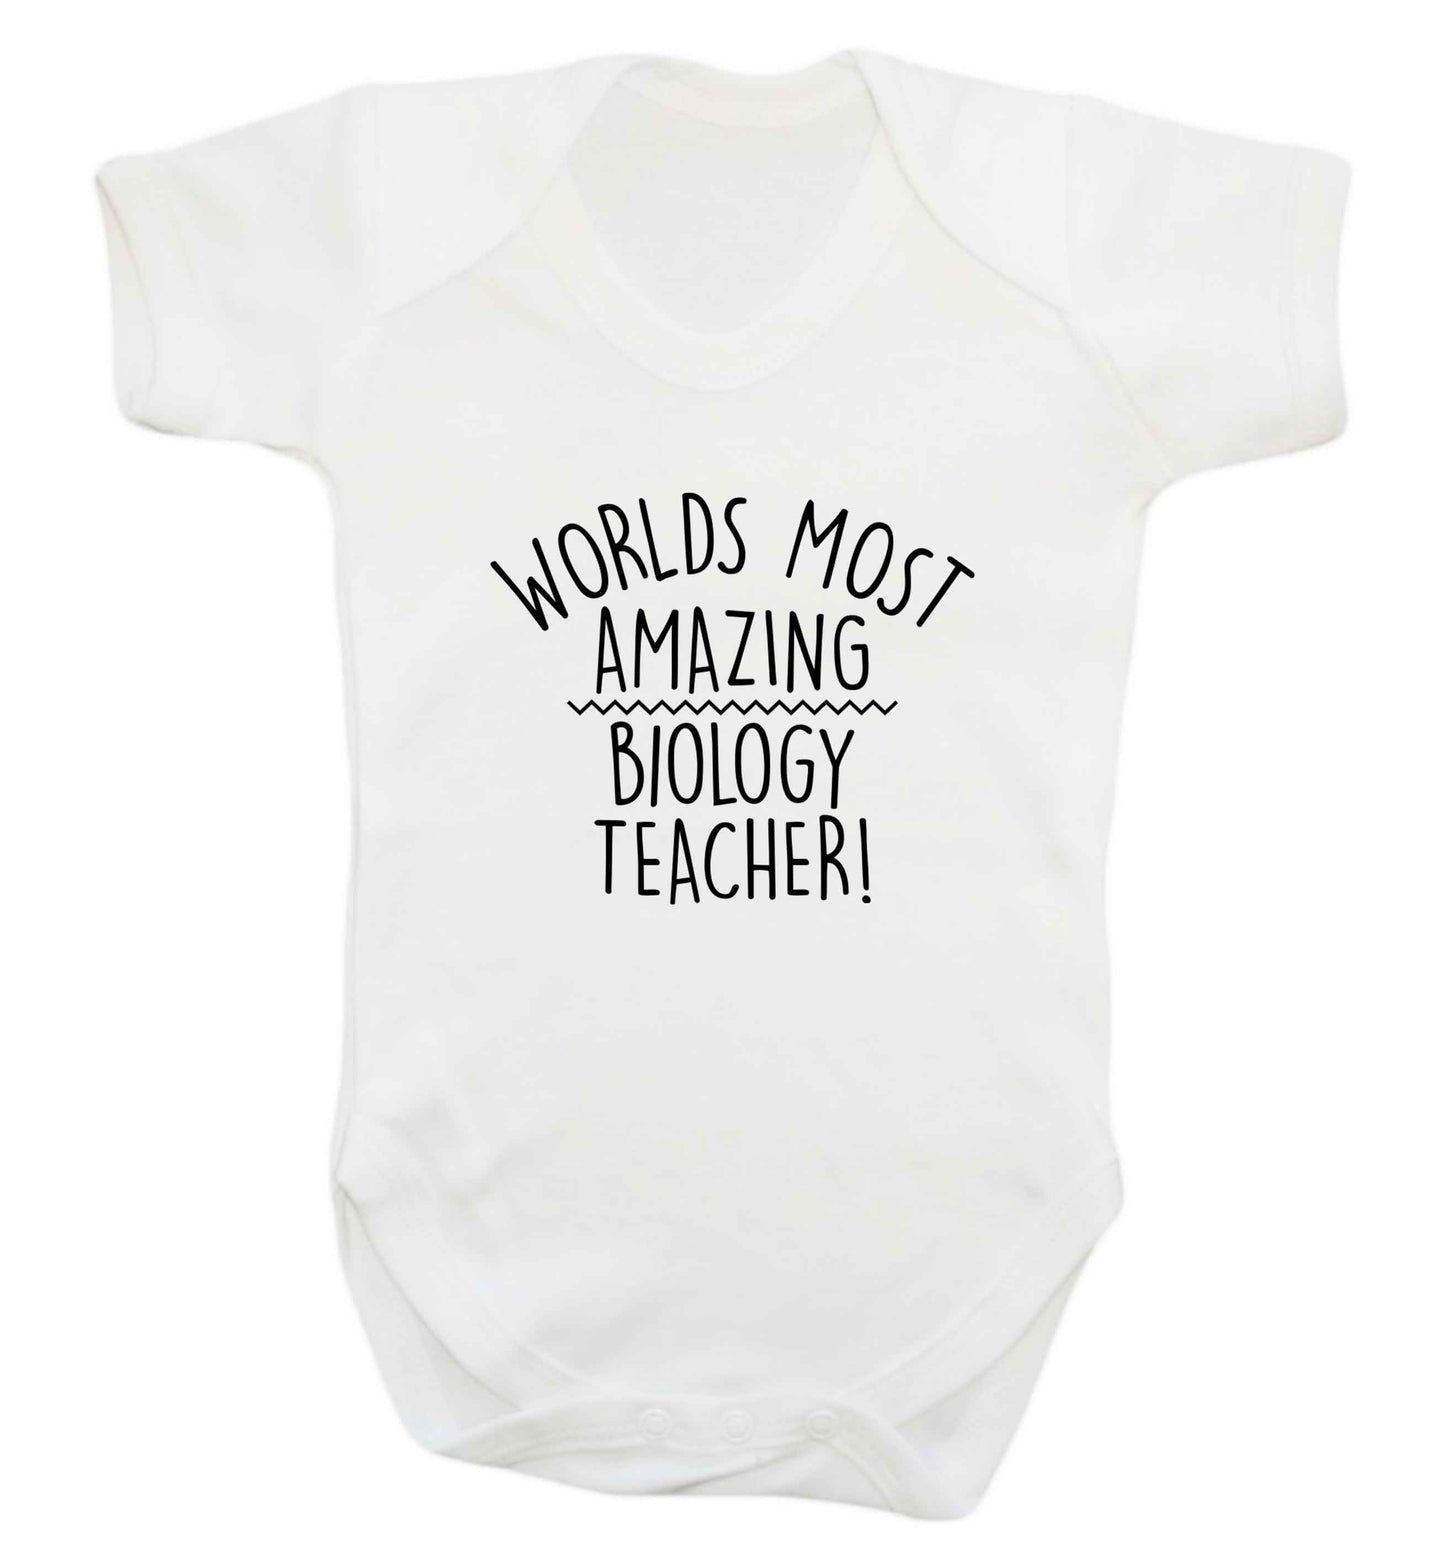 Worlds most amazing biology teacher baby vest white 18-24 months